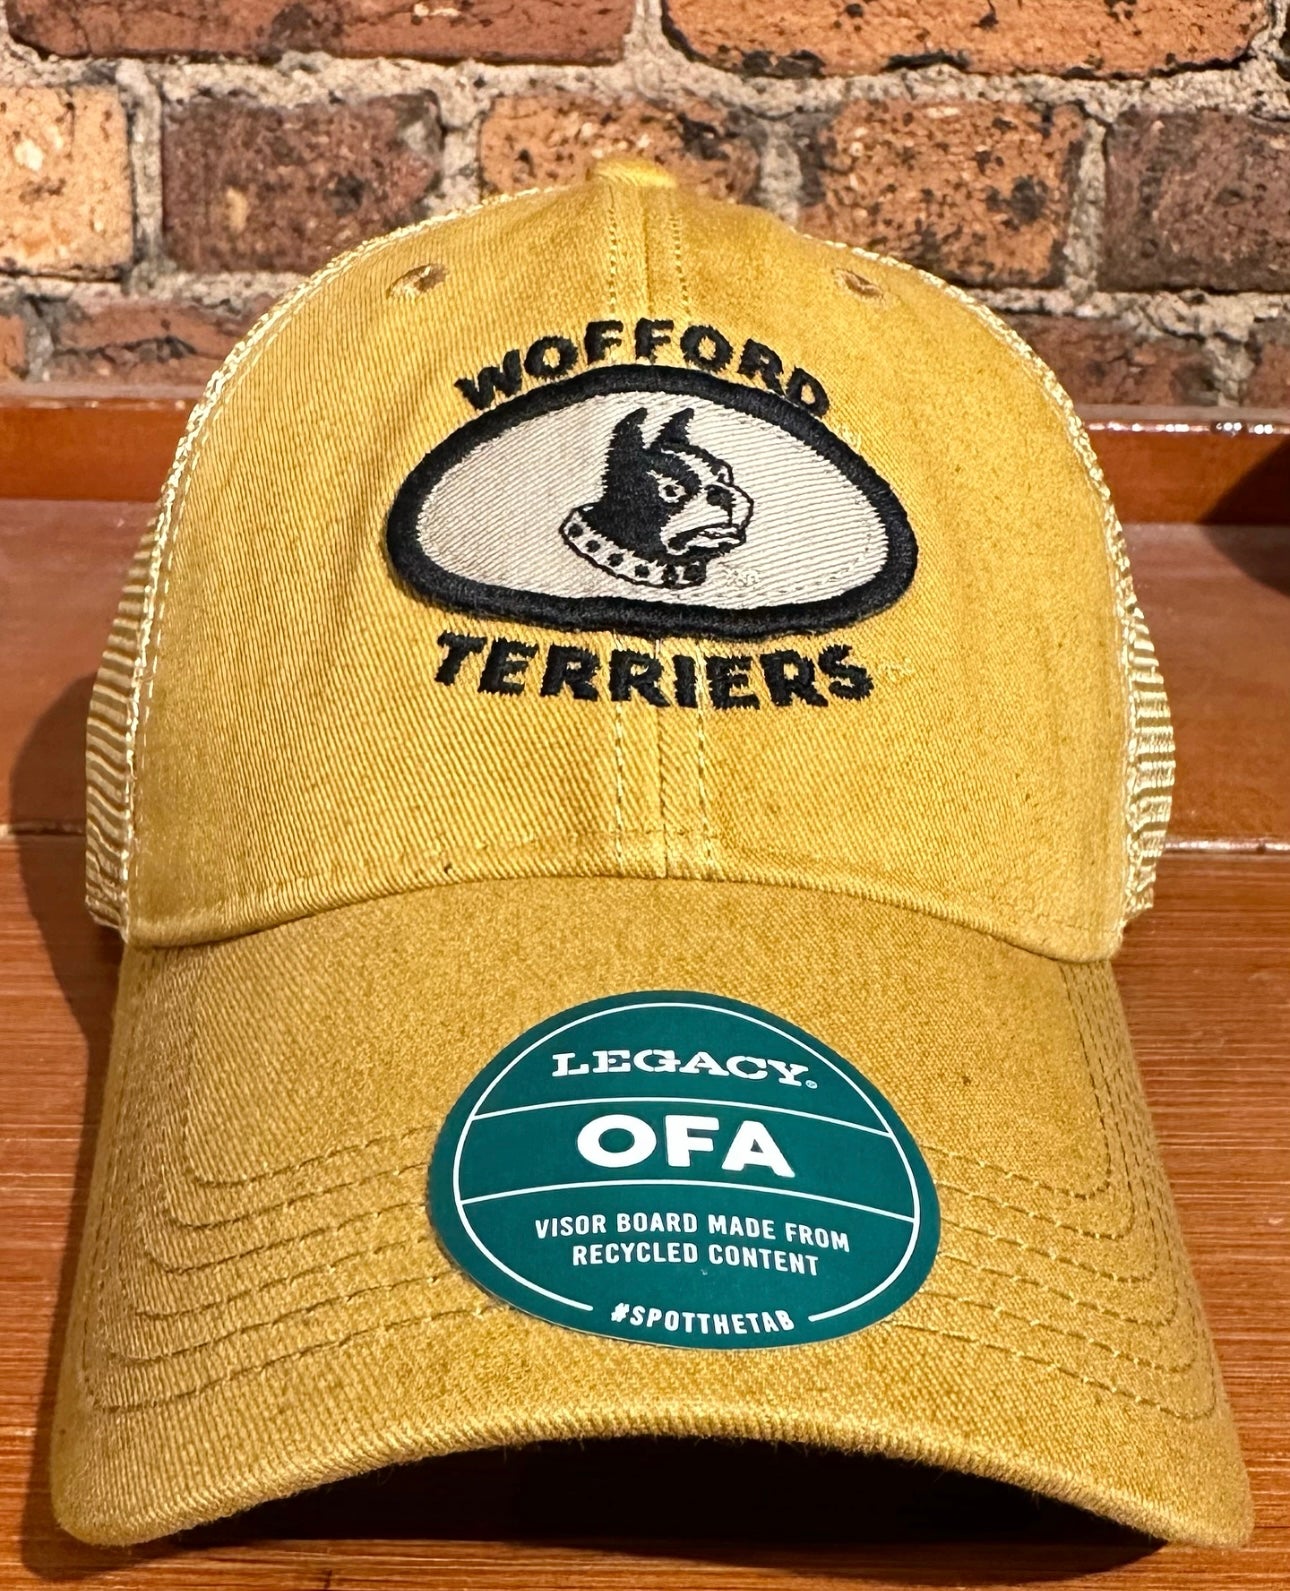 Wofford OFA Trucker Hat - Legacy